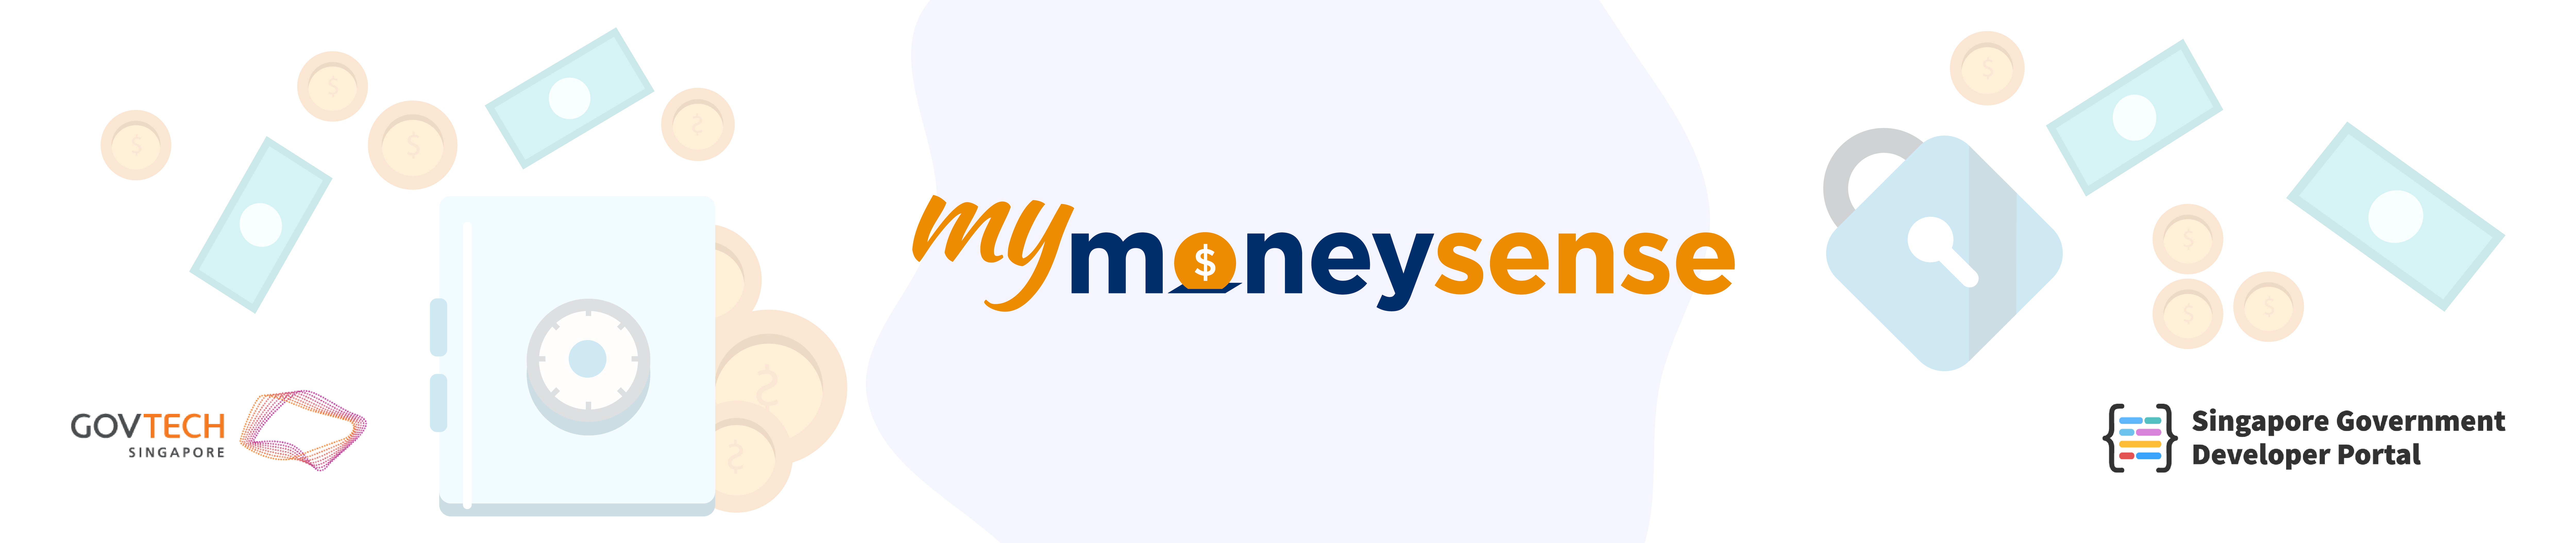 MyMoneySense header banner for Singapore Governmeent Developer Portal